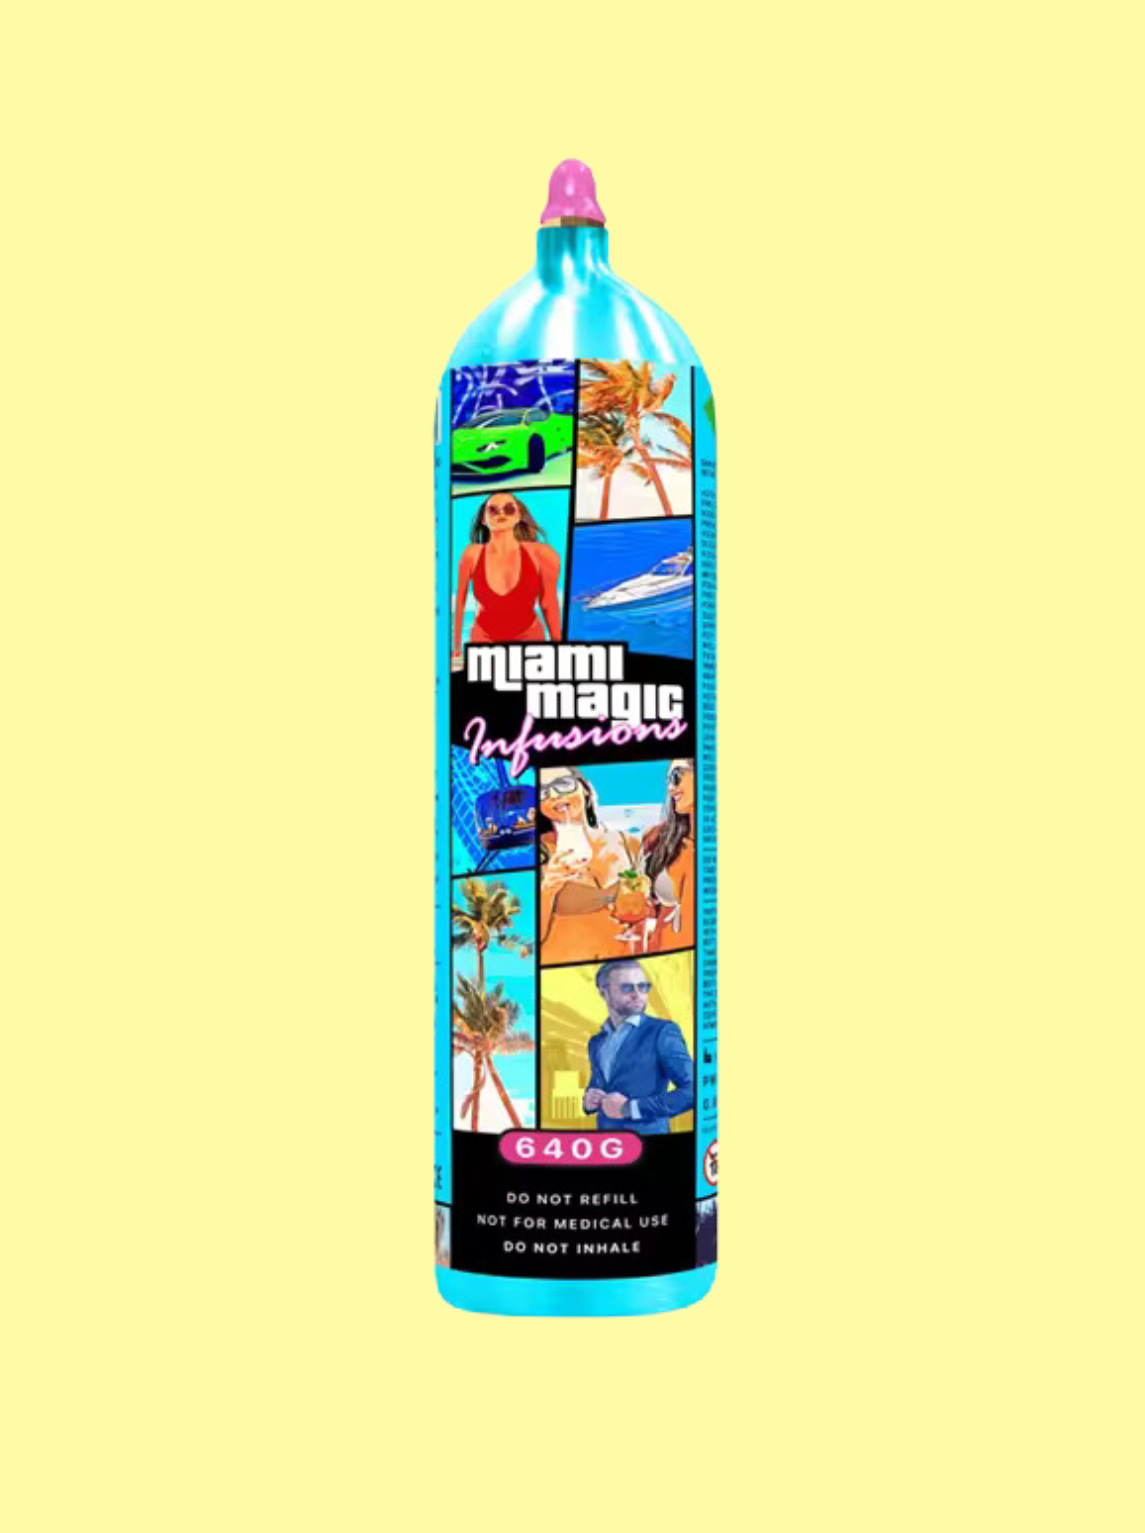 Die Gasflasche ist im GTA 5-Style designed, mit dem weißen Logo "Miami Magic" 640g. Der Hintergrund ist hellgelb.